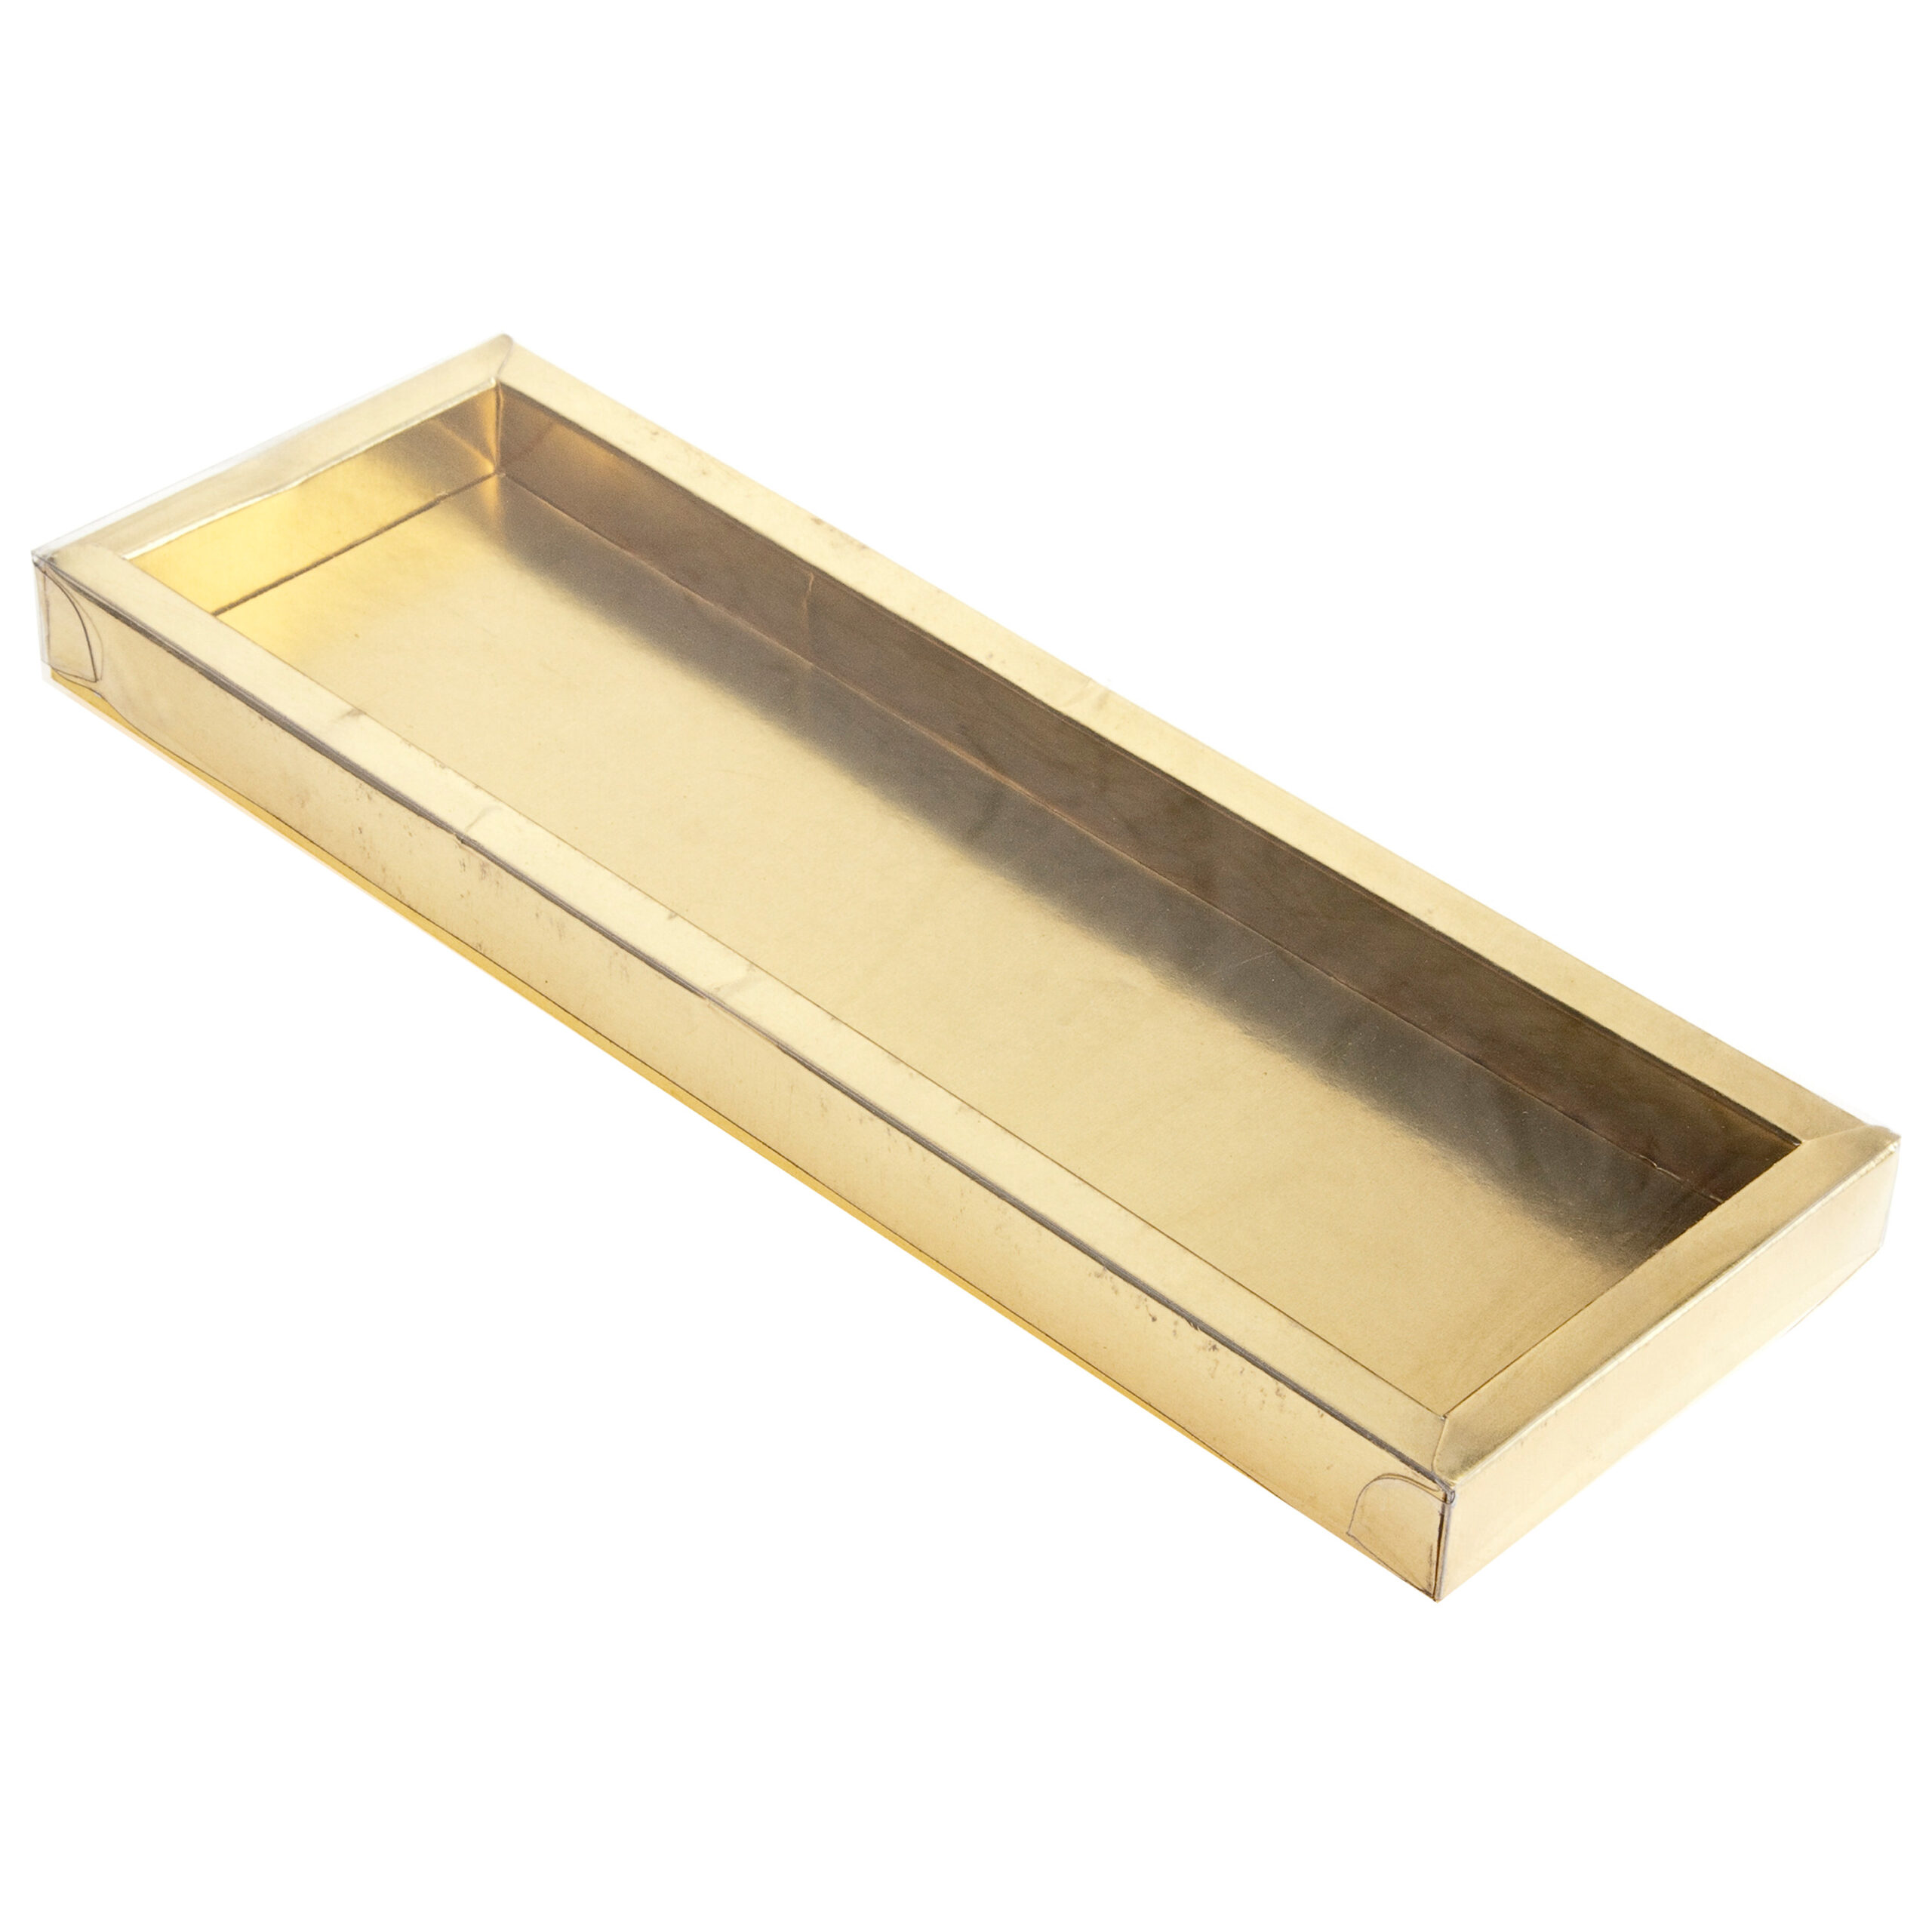 PVC BOX GOLD
BASE FRAME BOX
237x50x16mm